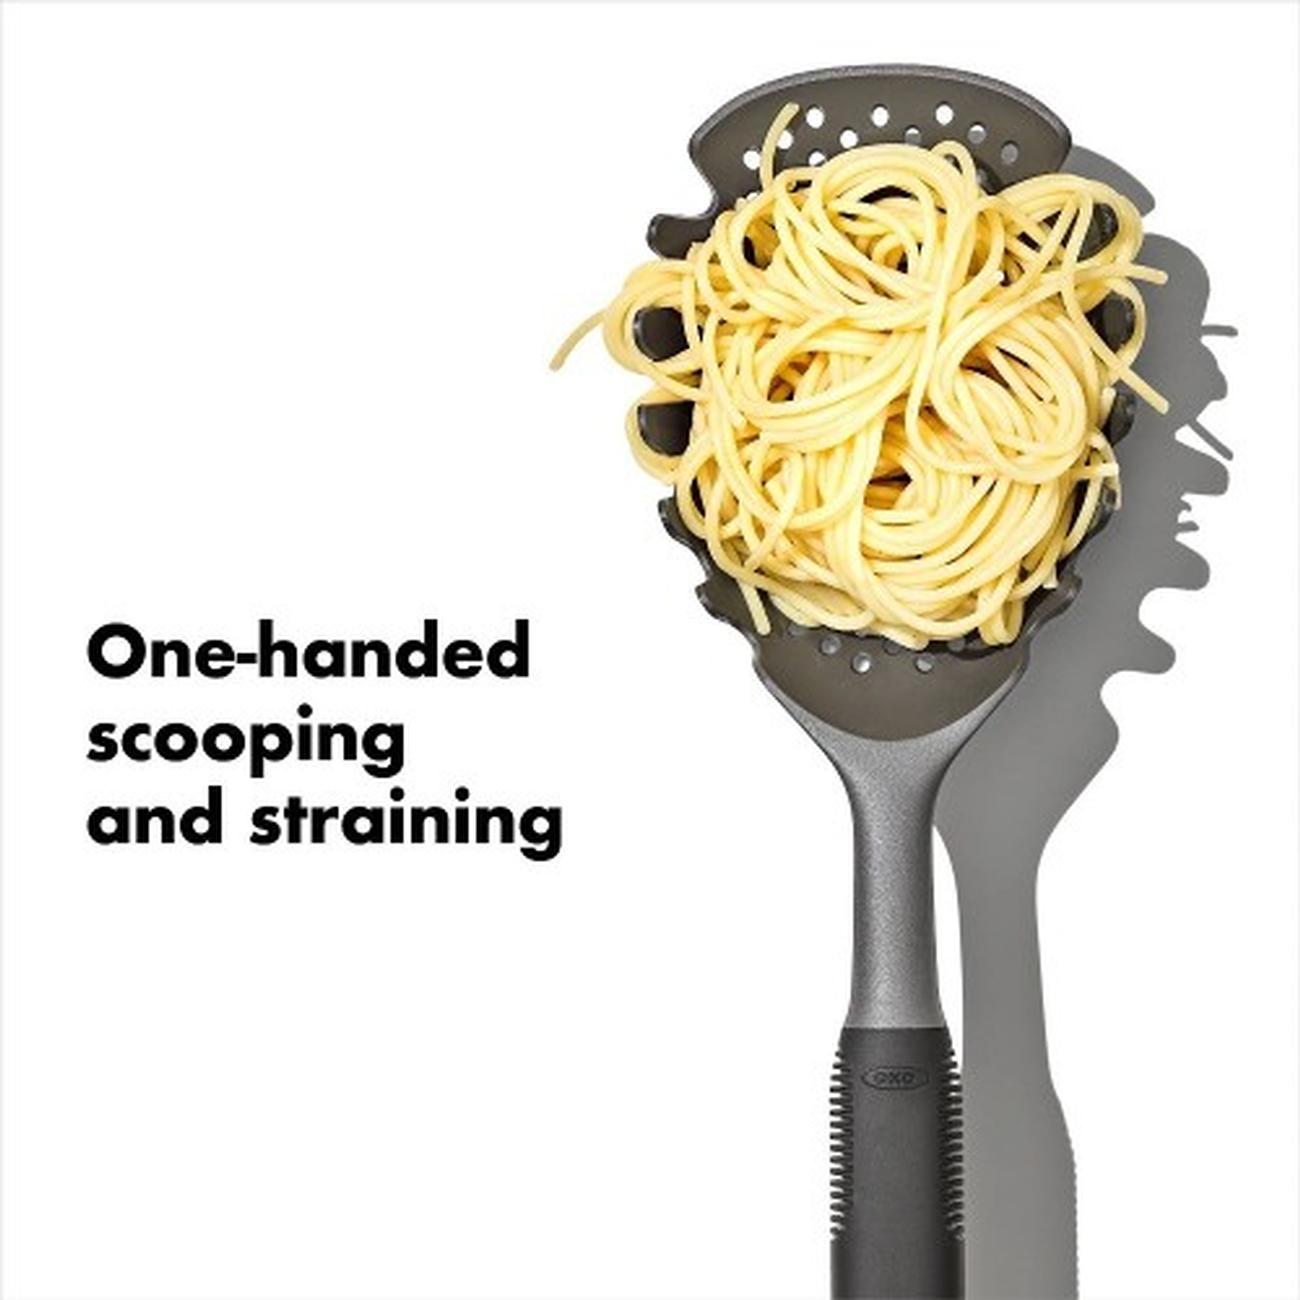 pasta-scoop-strainer-oxo-gg - OXO Good Grips Pasta Scoop Strainer 